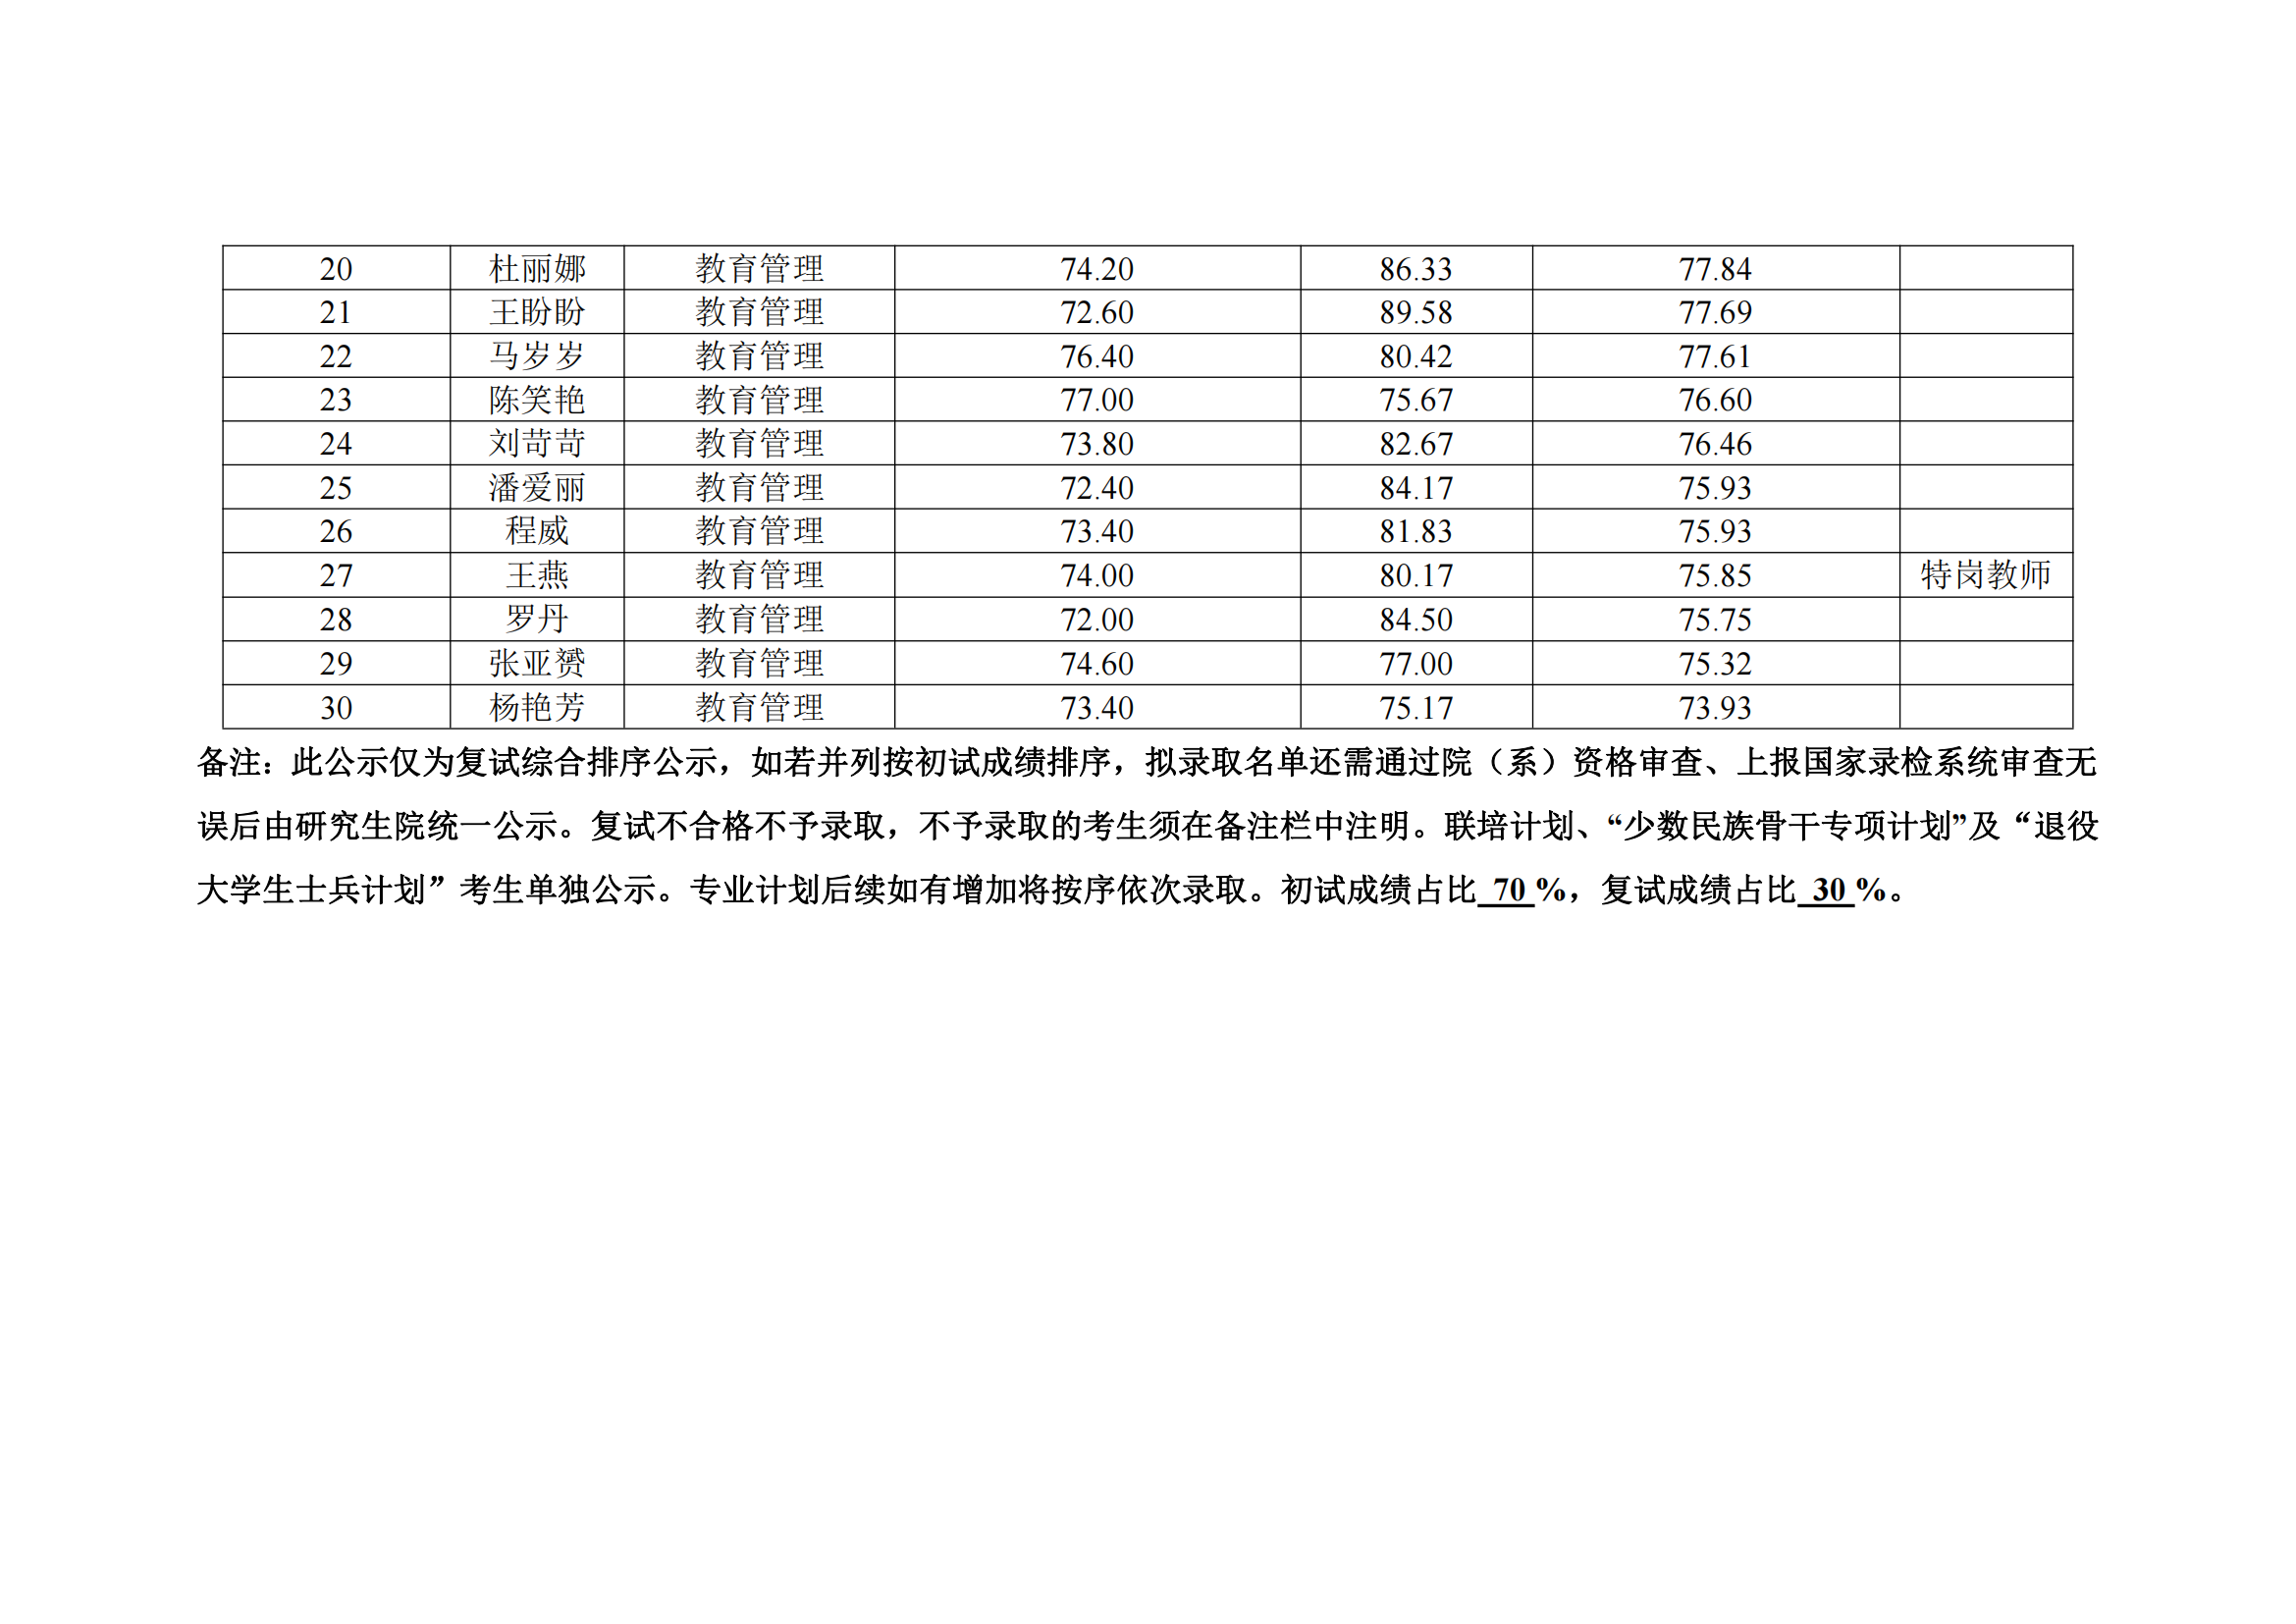 郑州大学教育学院2022年硕士研究生复试结果综合排序公示表_12.png